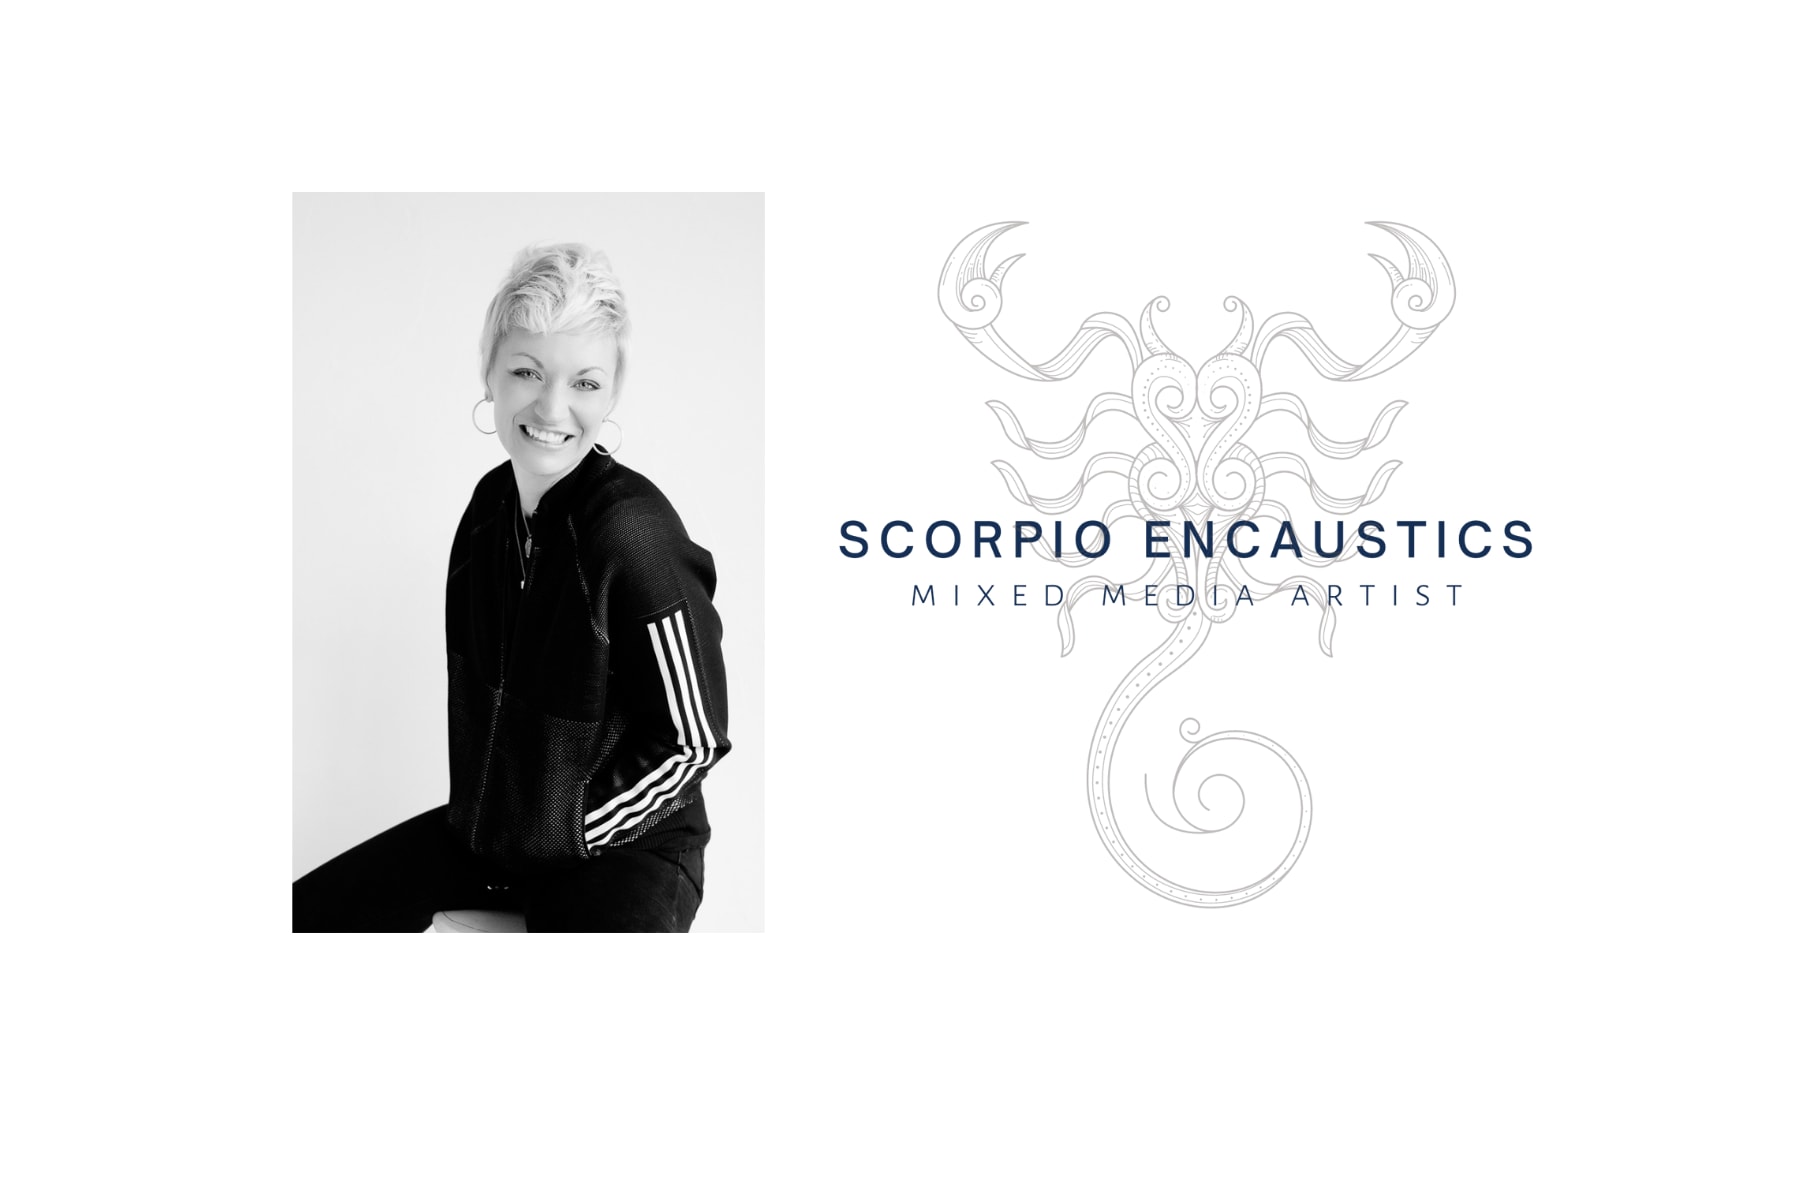 About Scorpio Encaustics